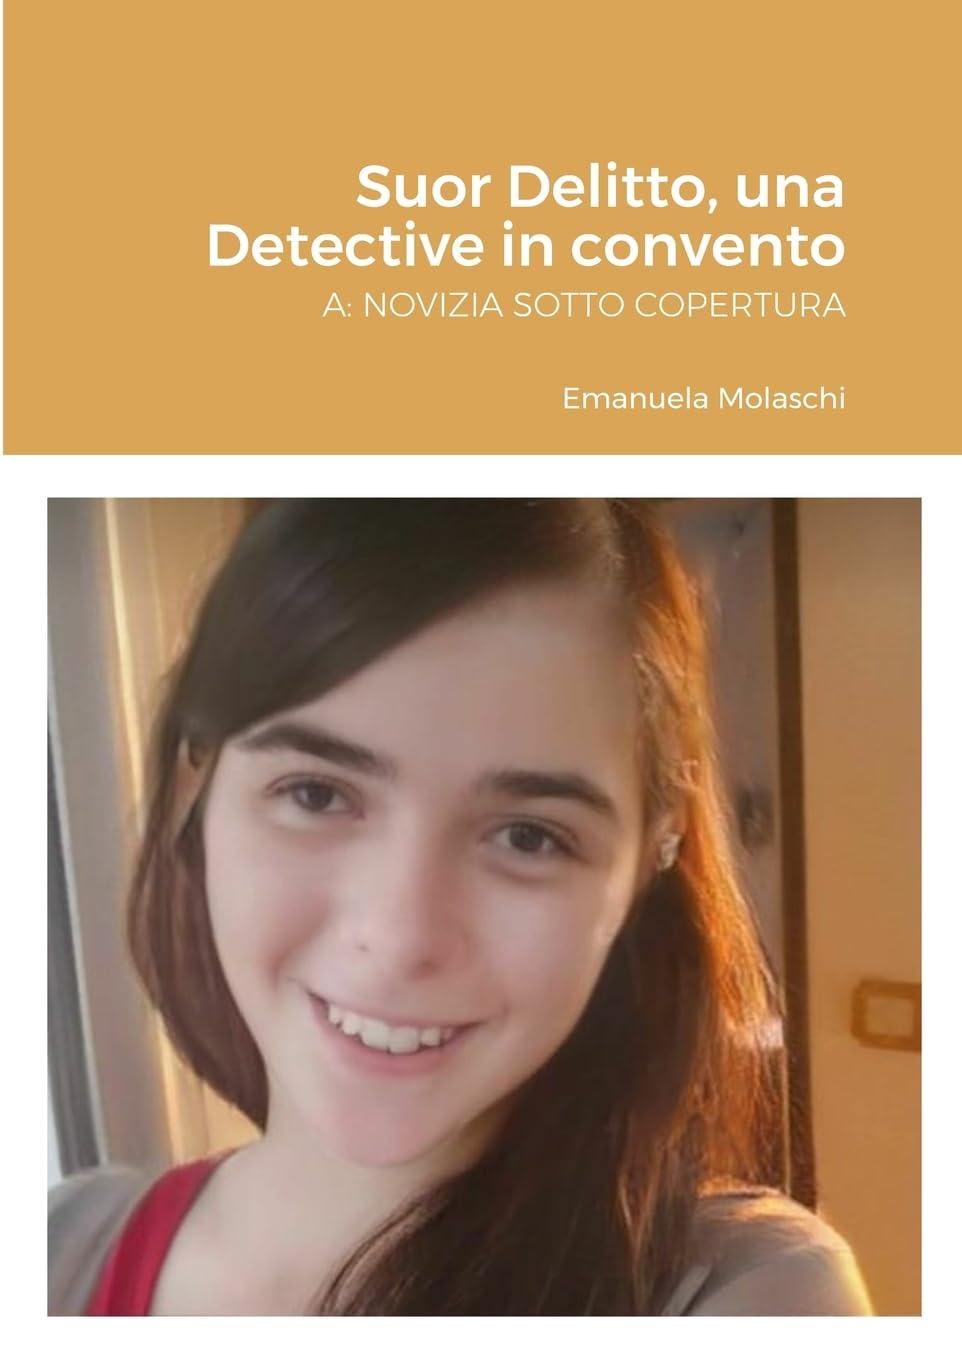 Libro "Suor Delitto: una Detective in convento. A: NOVIZIA SOTTO COPERTURA" di Emanuela Molaschi